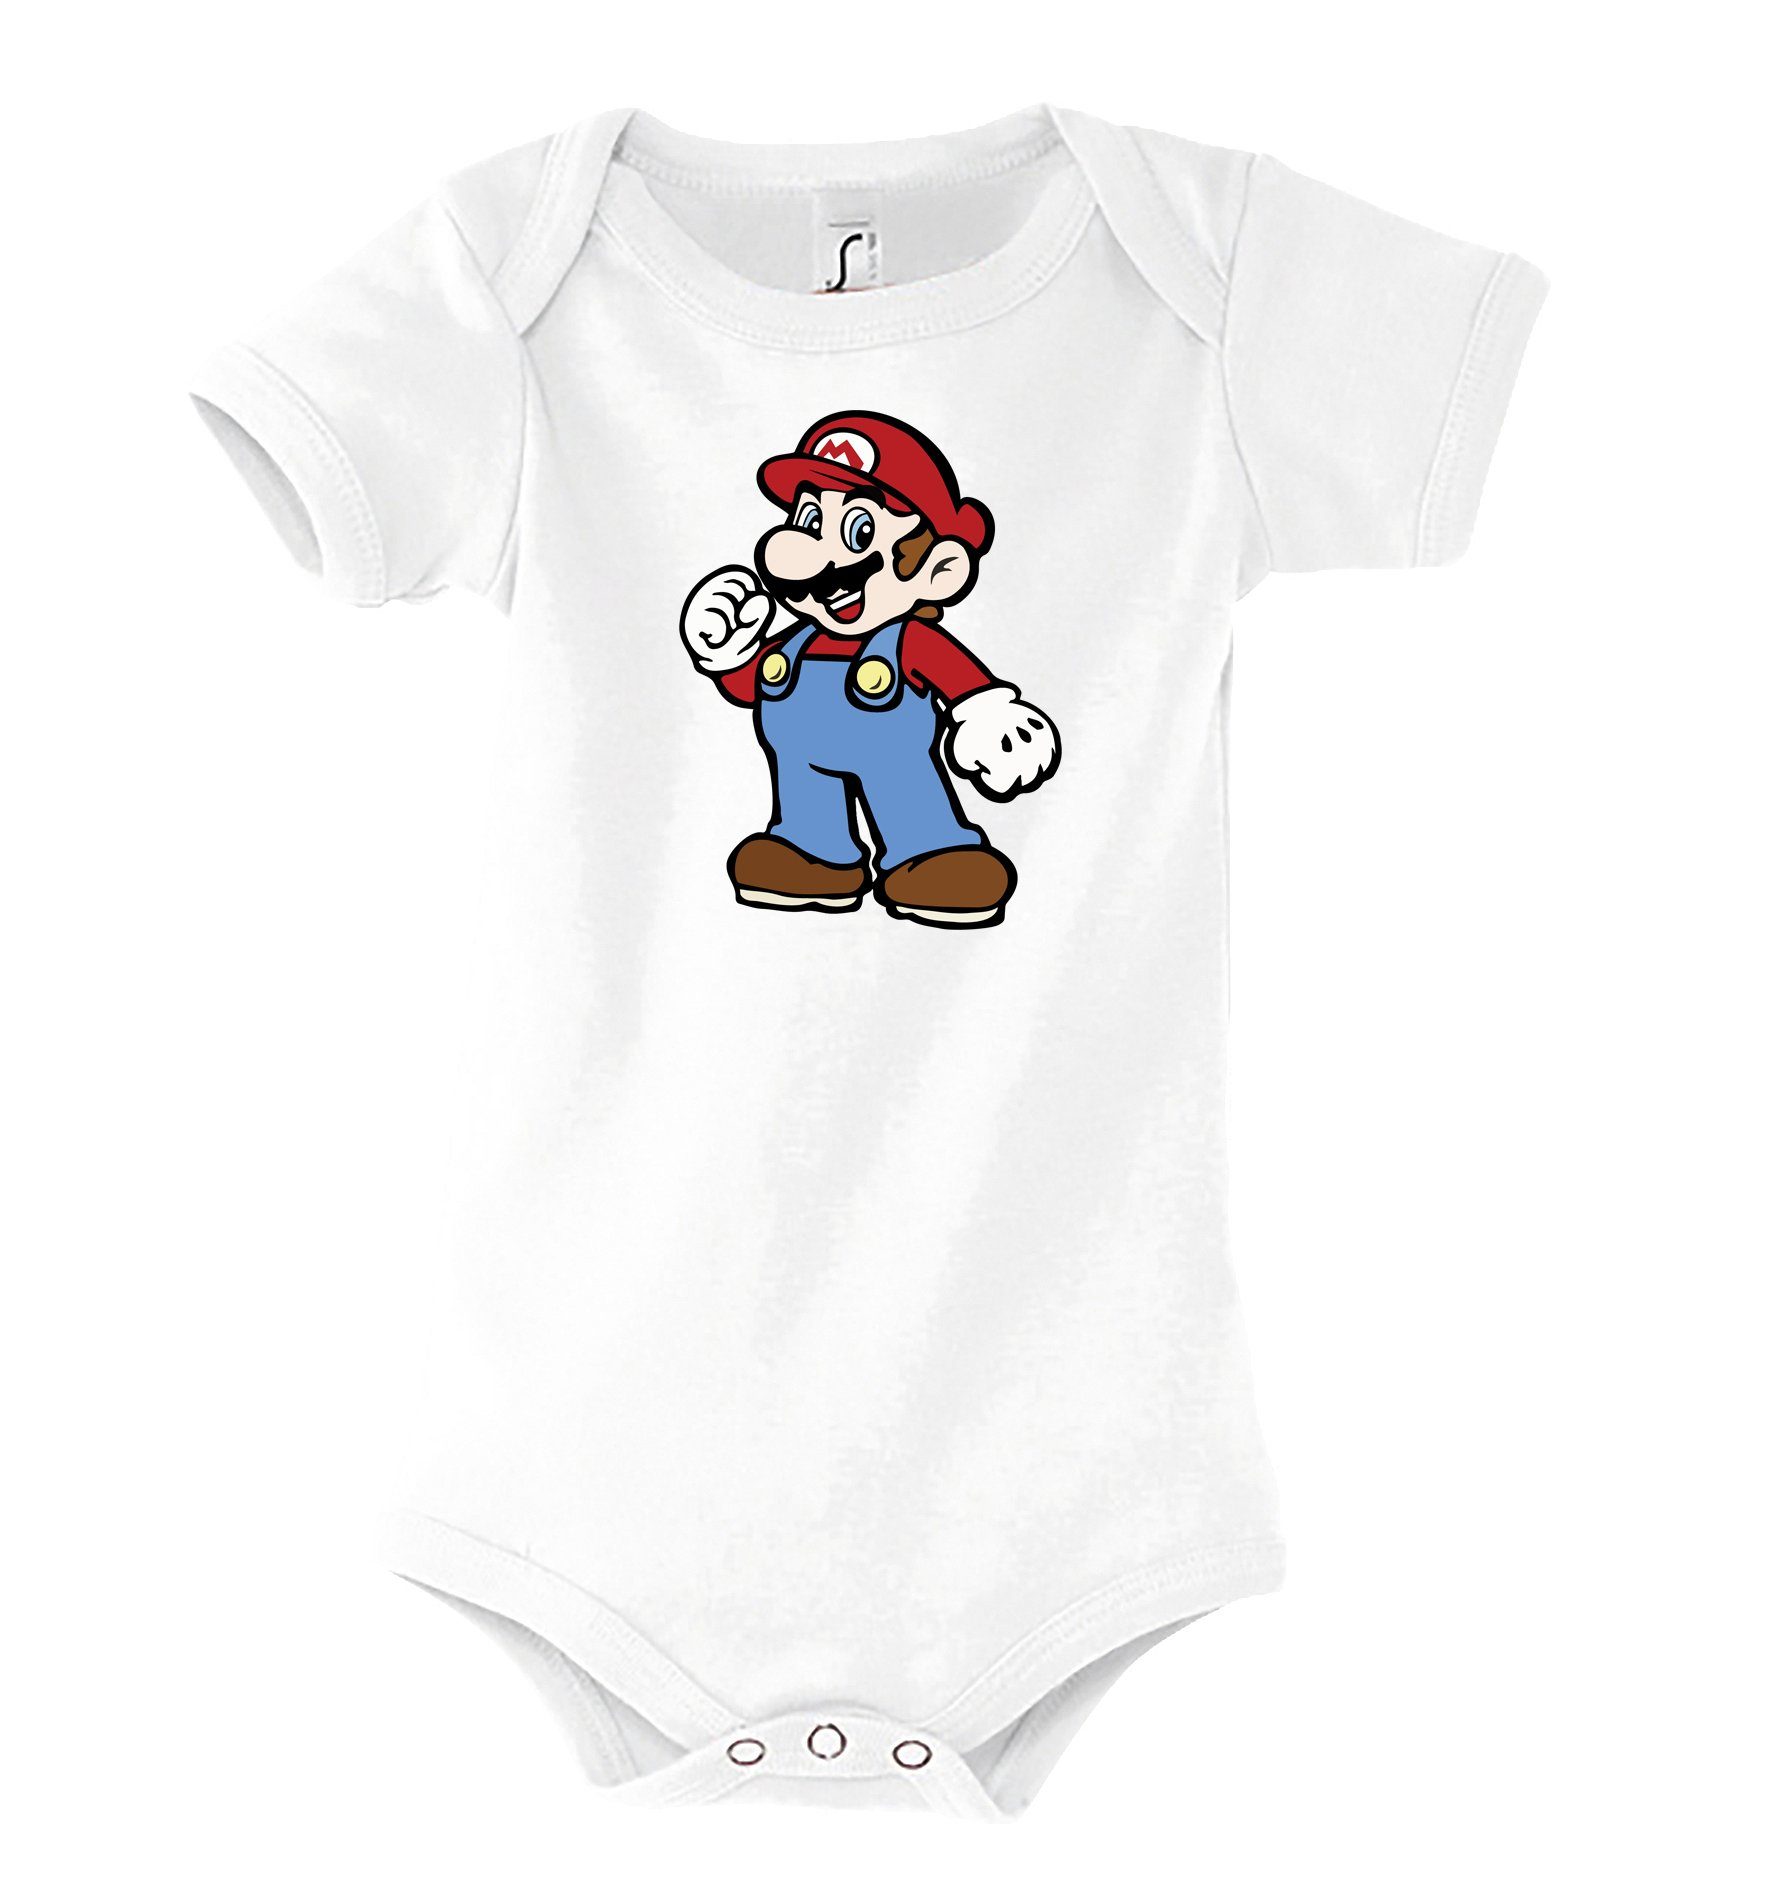 Youth Designz Kurzarmbody Baby Body Strampler Mario mit niedlichem Frontprint Weiß | Shirtbodies